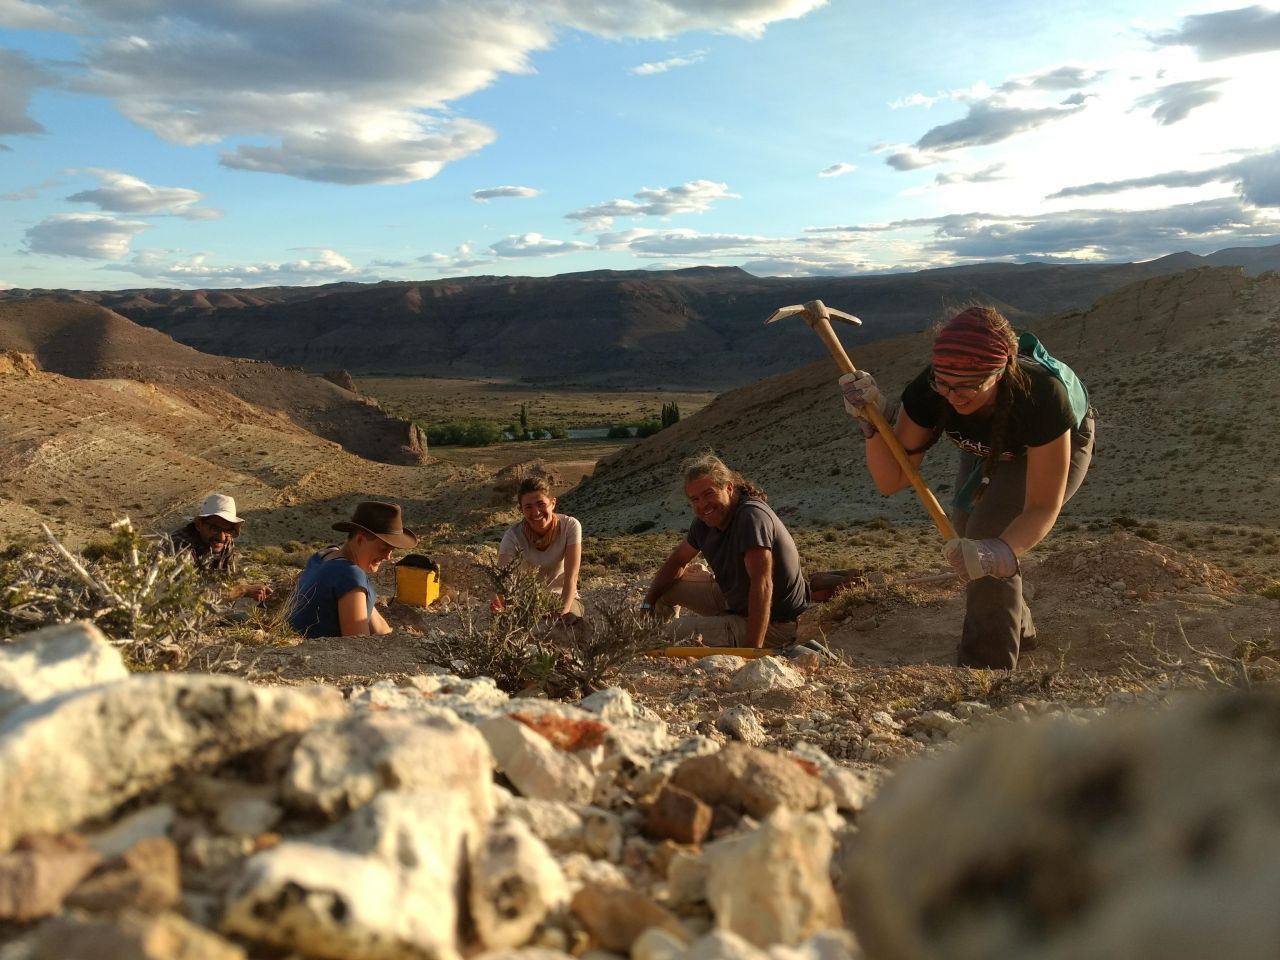 Auch die Studierenden sind mit auf Dino-Ausgrabung in Argentinien. Wie man sieht, ist die Paläontologie keine reine Männerangelegenheit.